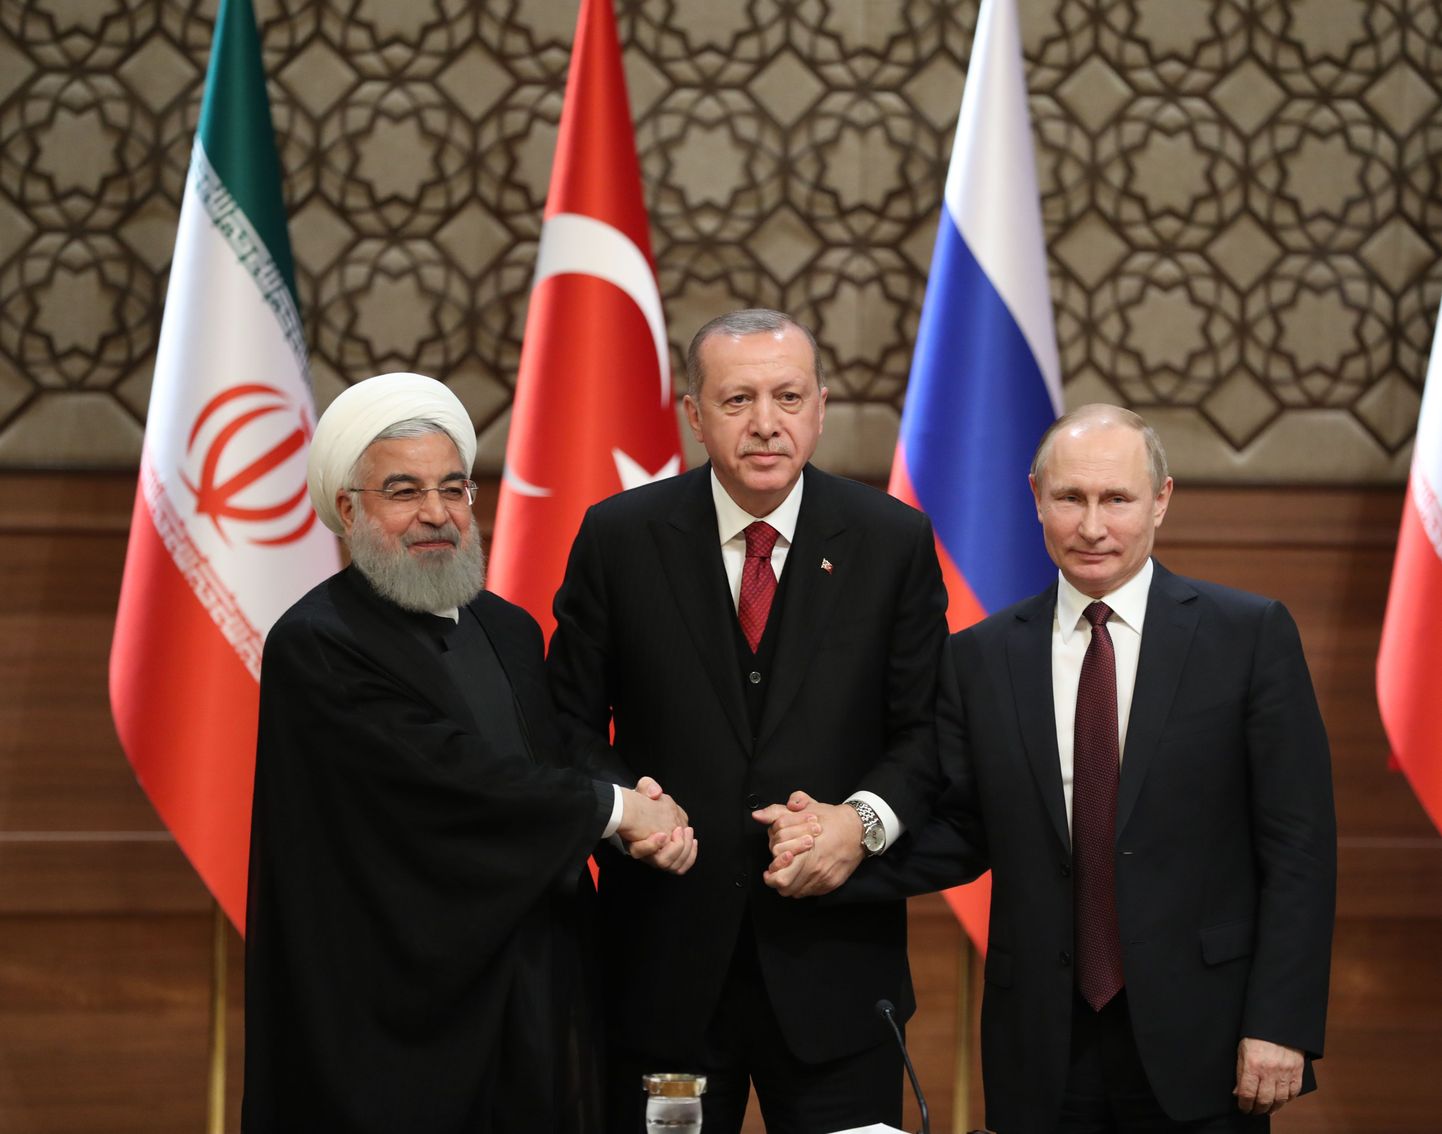 Vasakult: Hassan Rouhani, Recep Tayyip Erdogan ja Vladimir Putin.